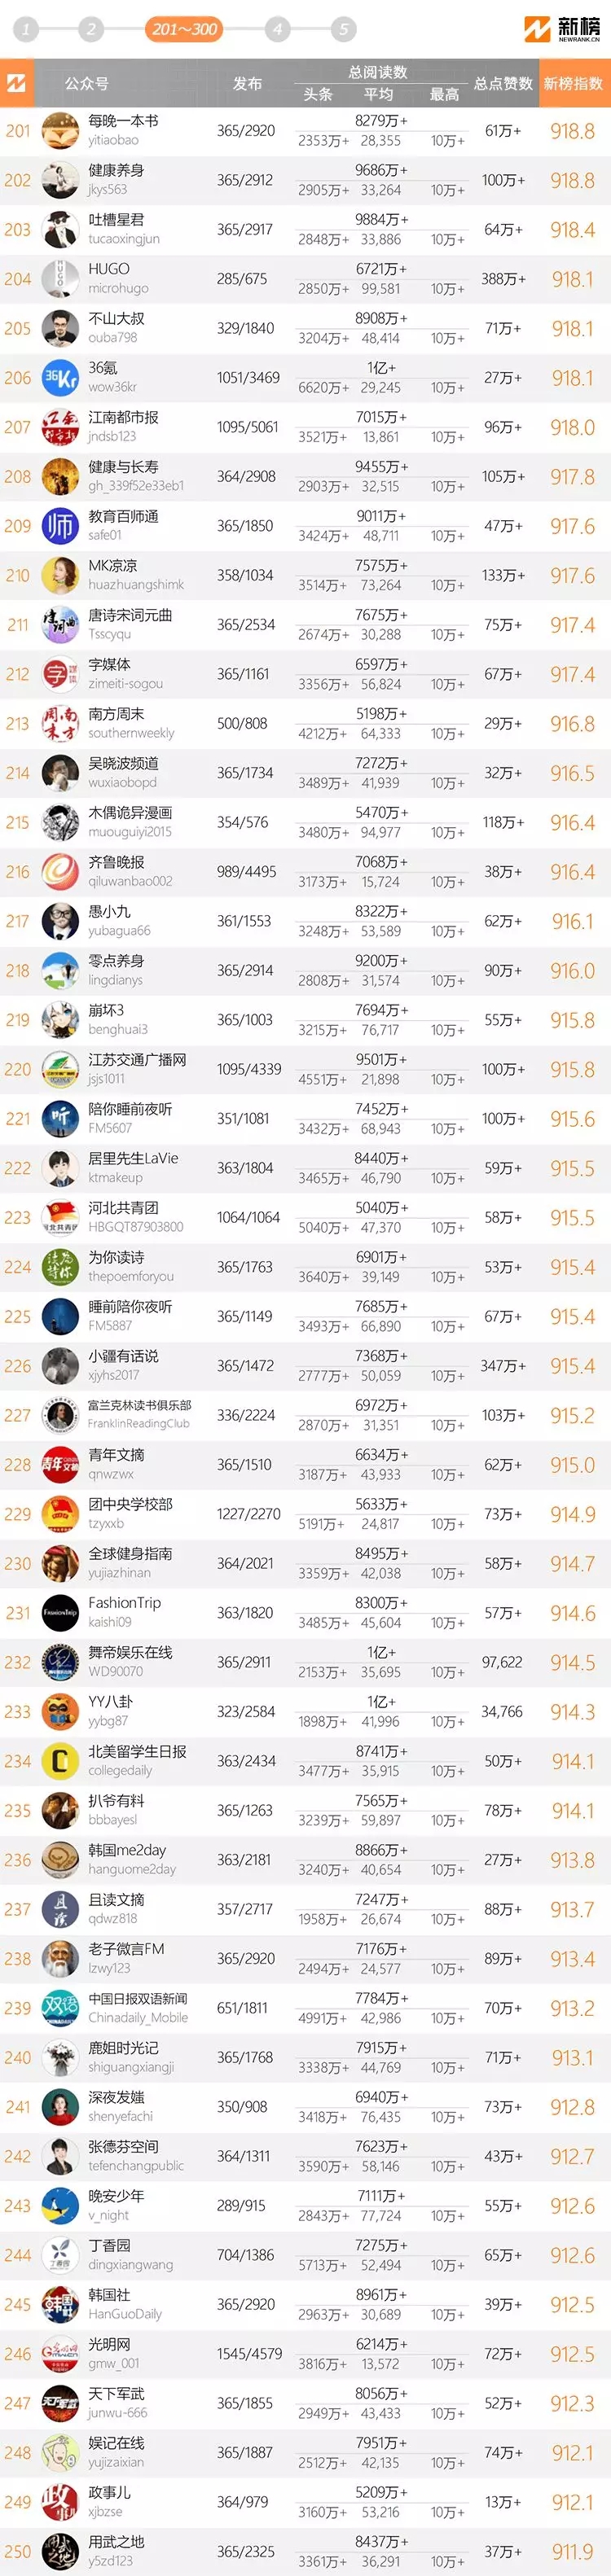 十大微信公眾號排名榜-2018中國微信500強排名榜(閱讀量排序)